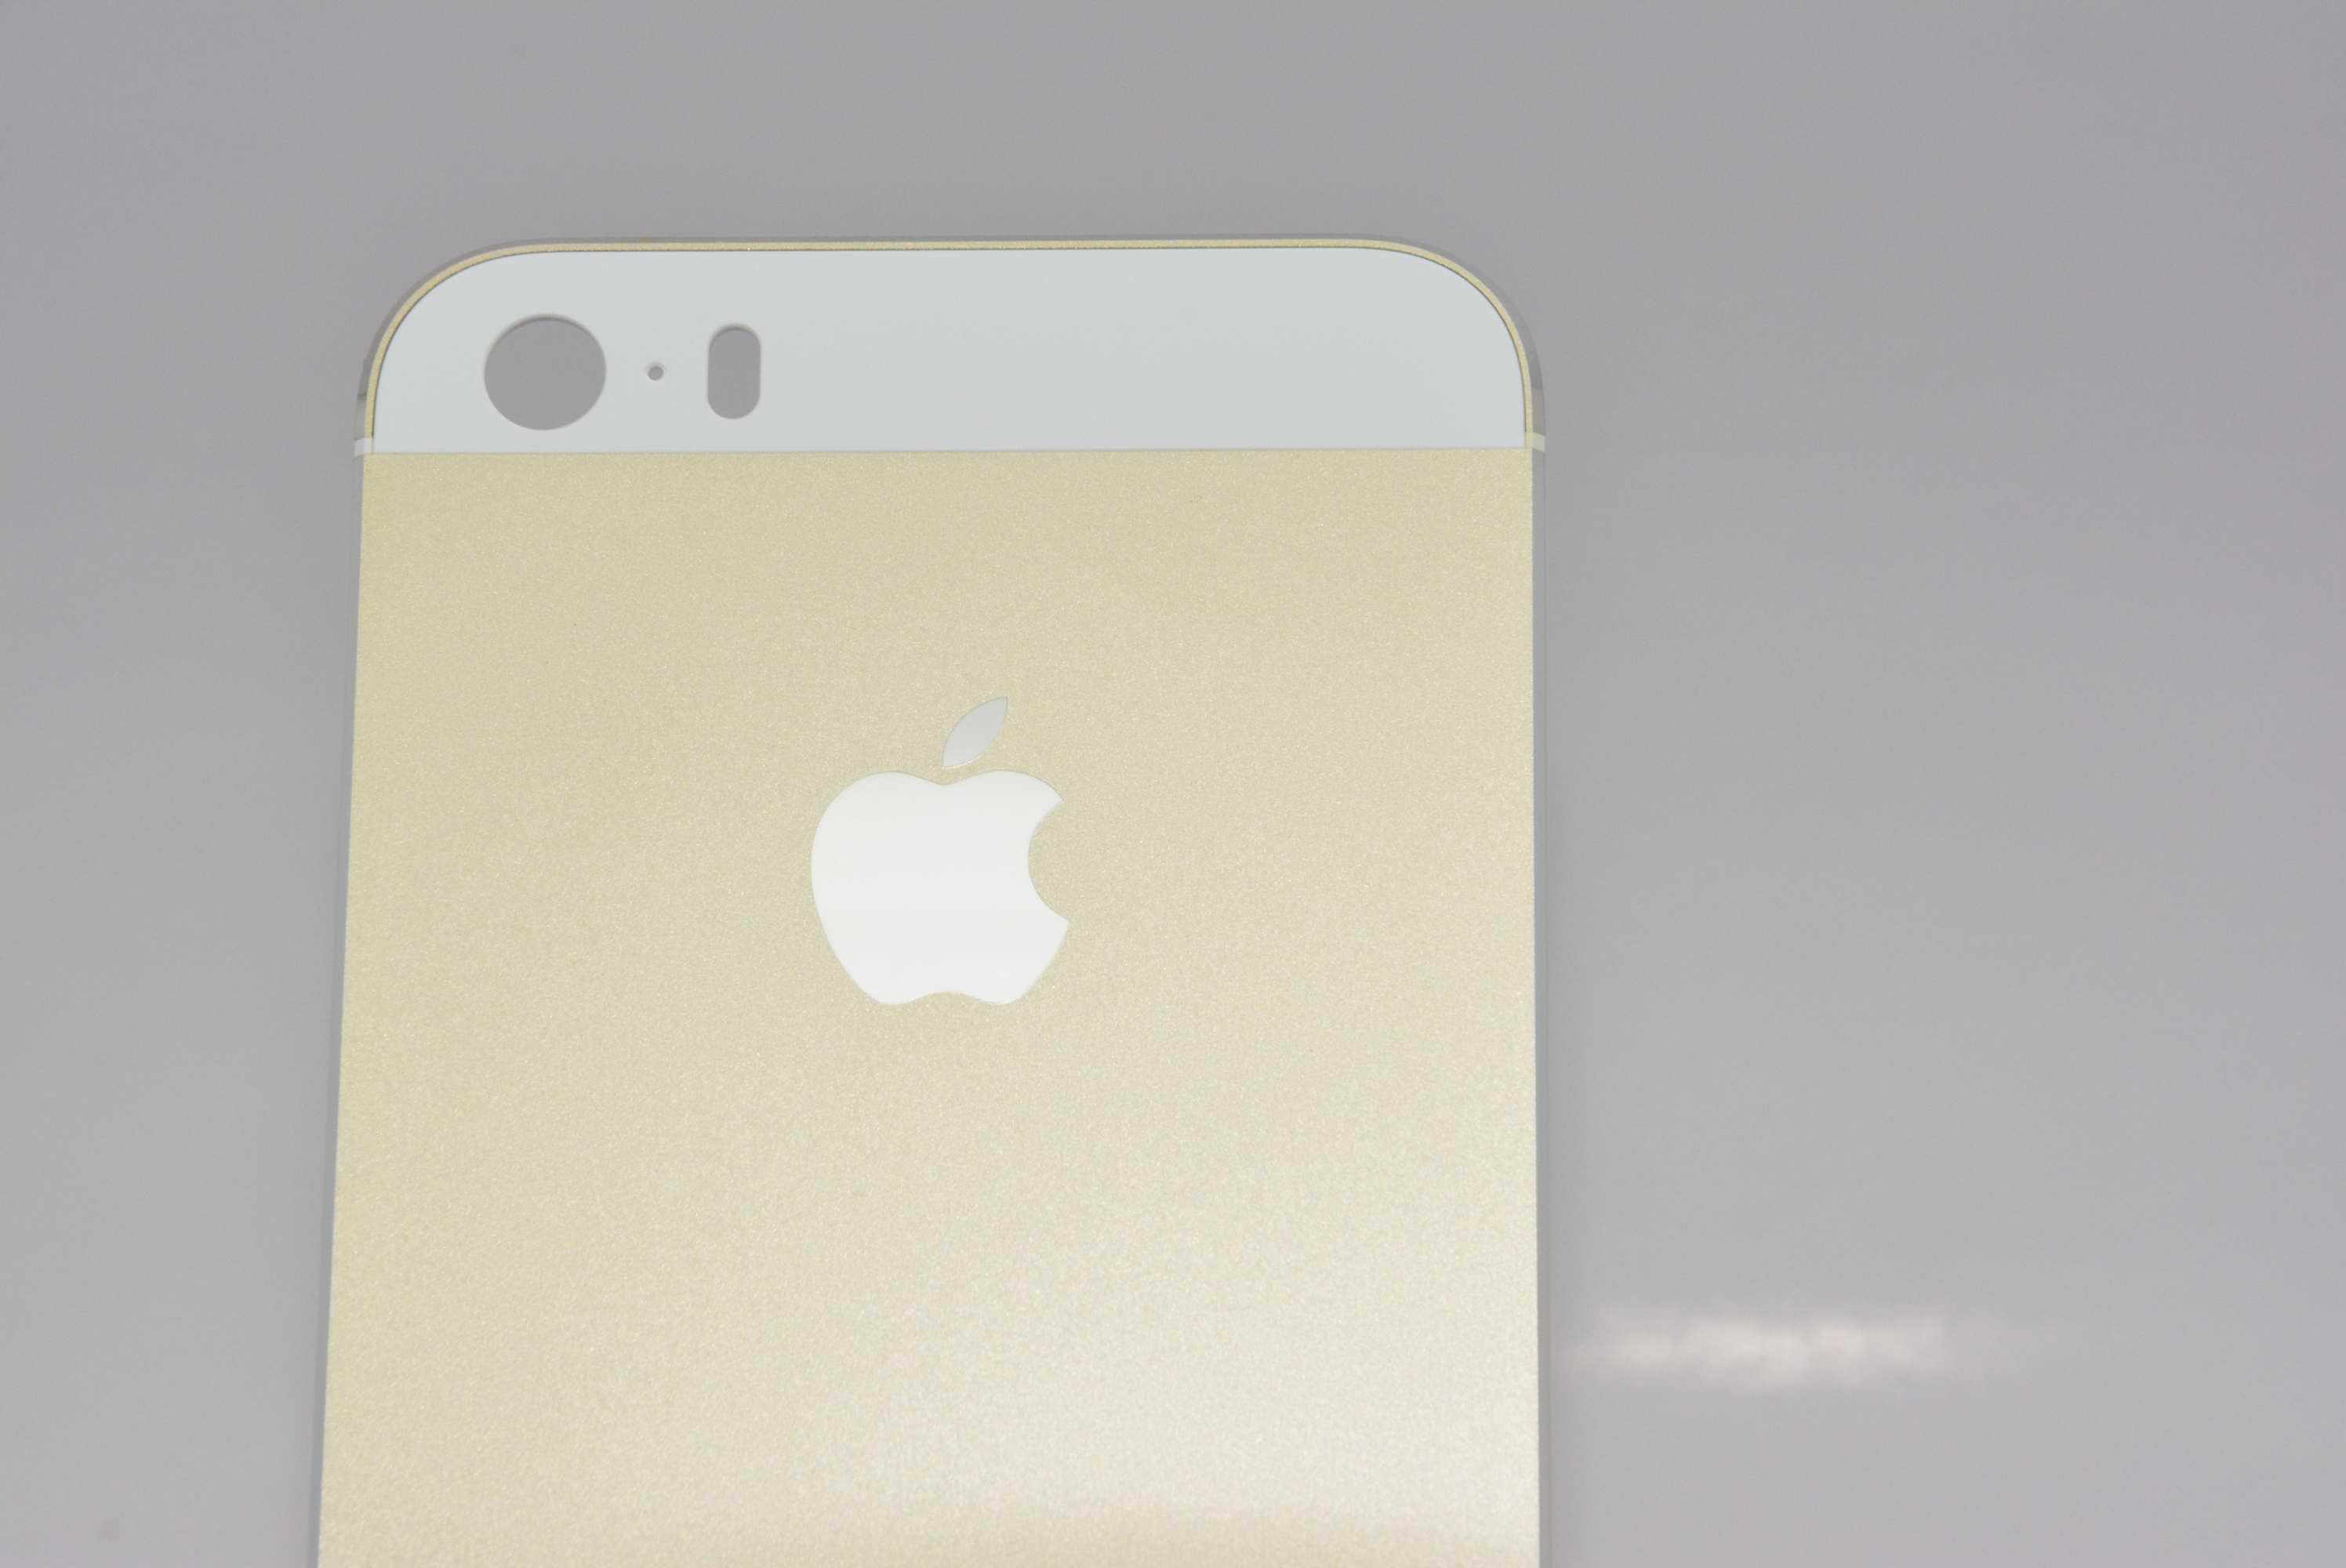 Altın renkli iPhone 5S modeli ile ilgili yeni bir görsel paylaşıldı